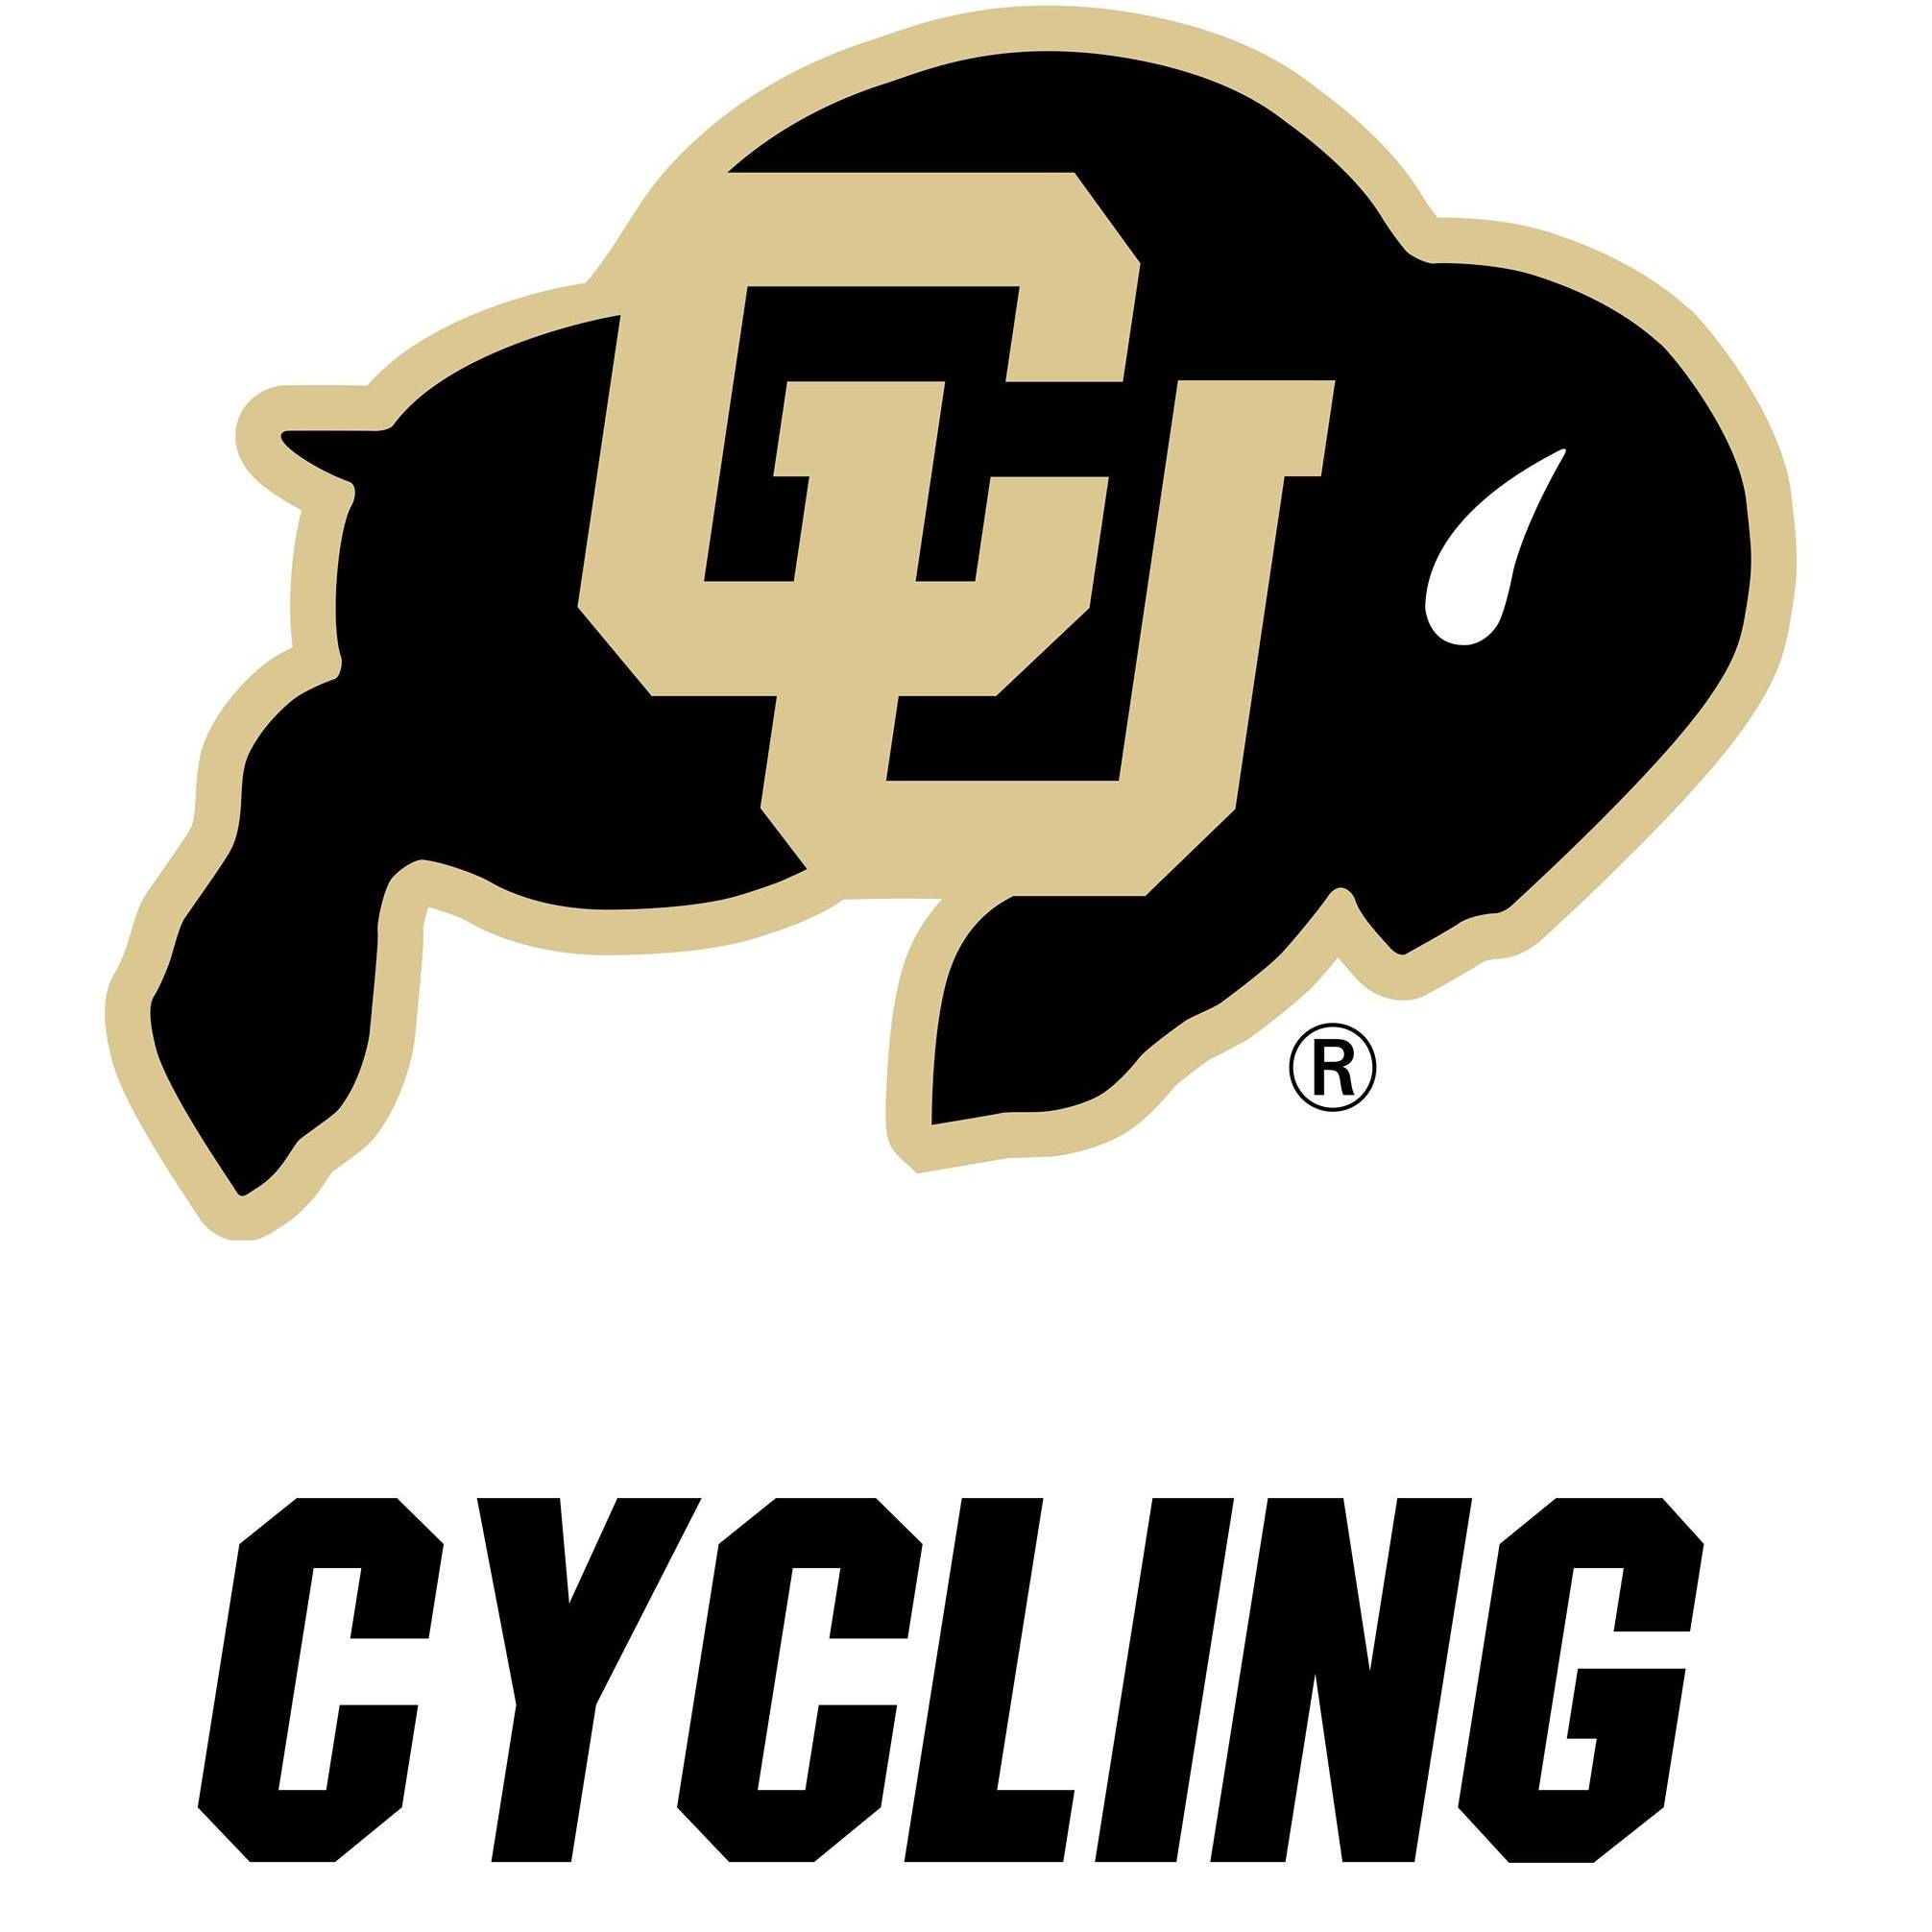 CU Cycling Team